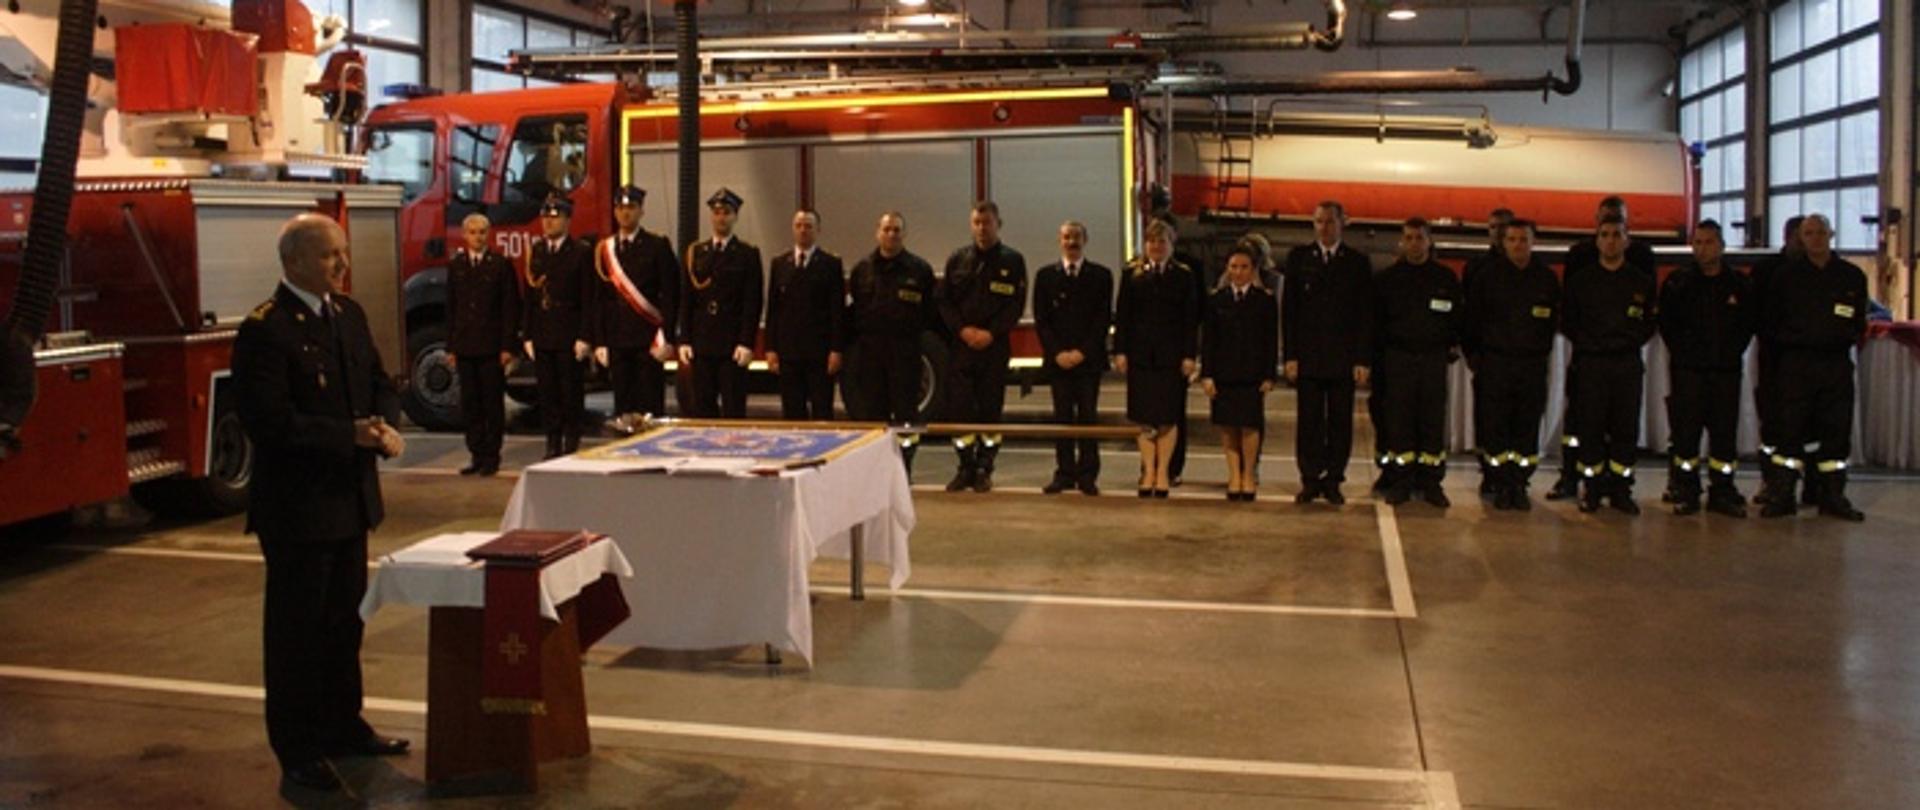 Zdjęcie przedstawia strażaków w mundurach galowych na spotkaniu wigilijnym